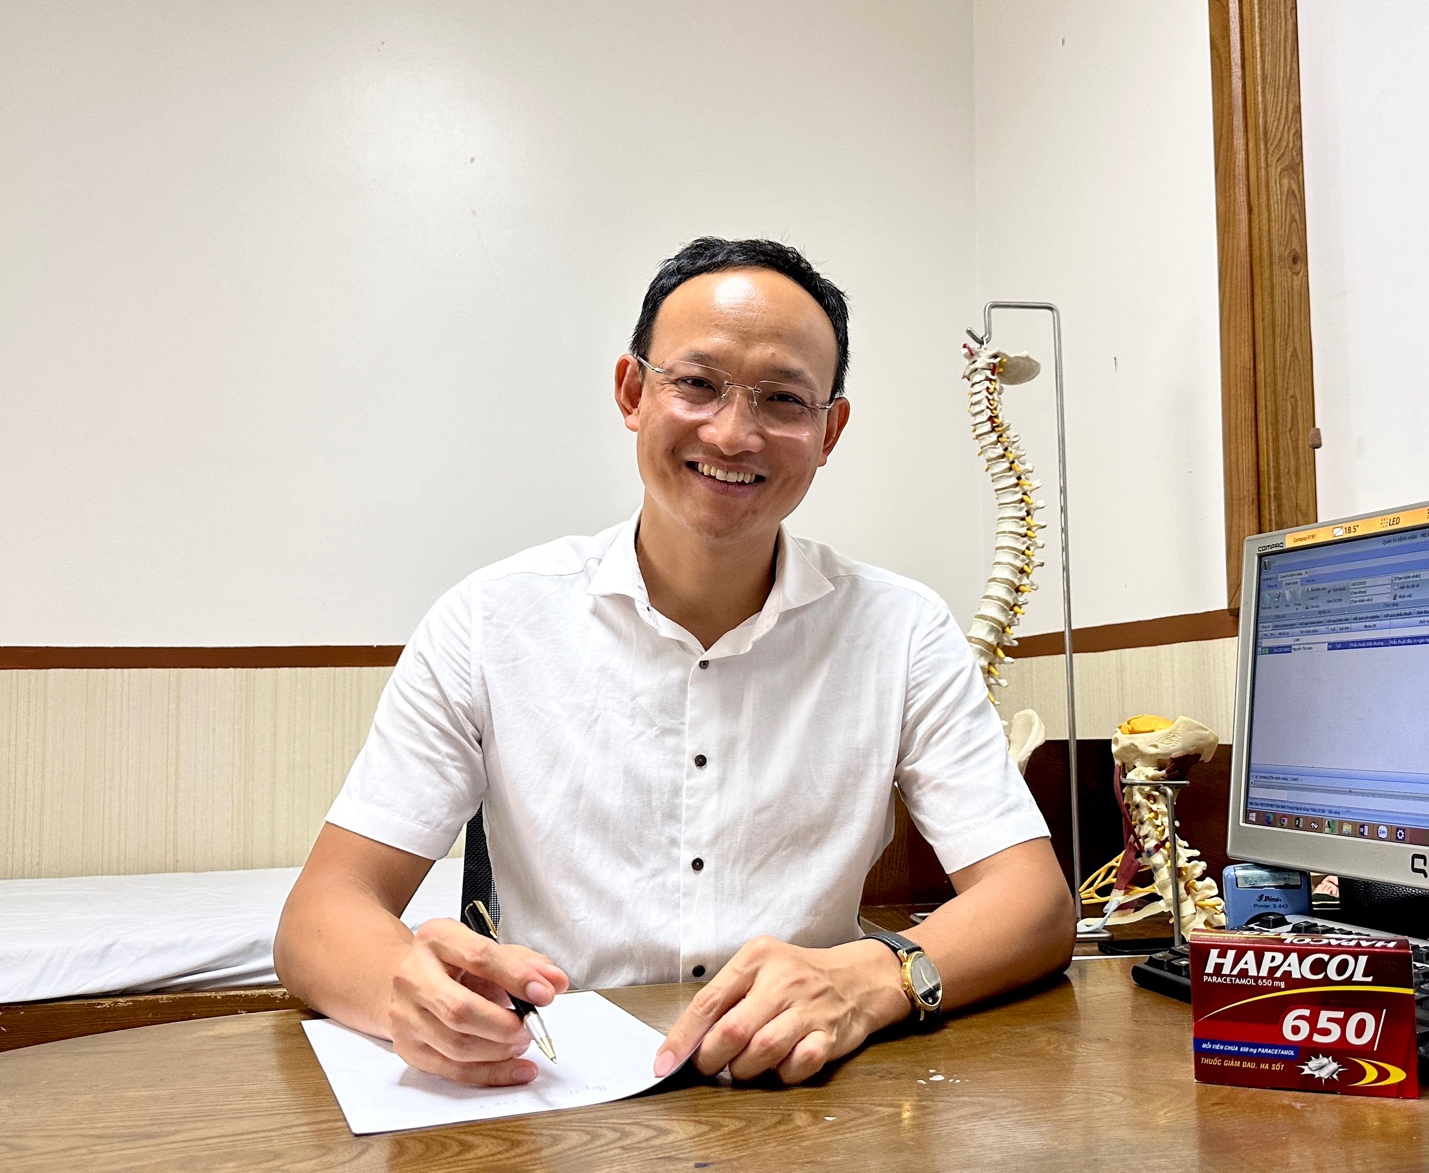 20 năm Hapacol đồng hành cùng y bác sĩ chăm sóc sức khoẻ người Việt - 5